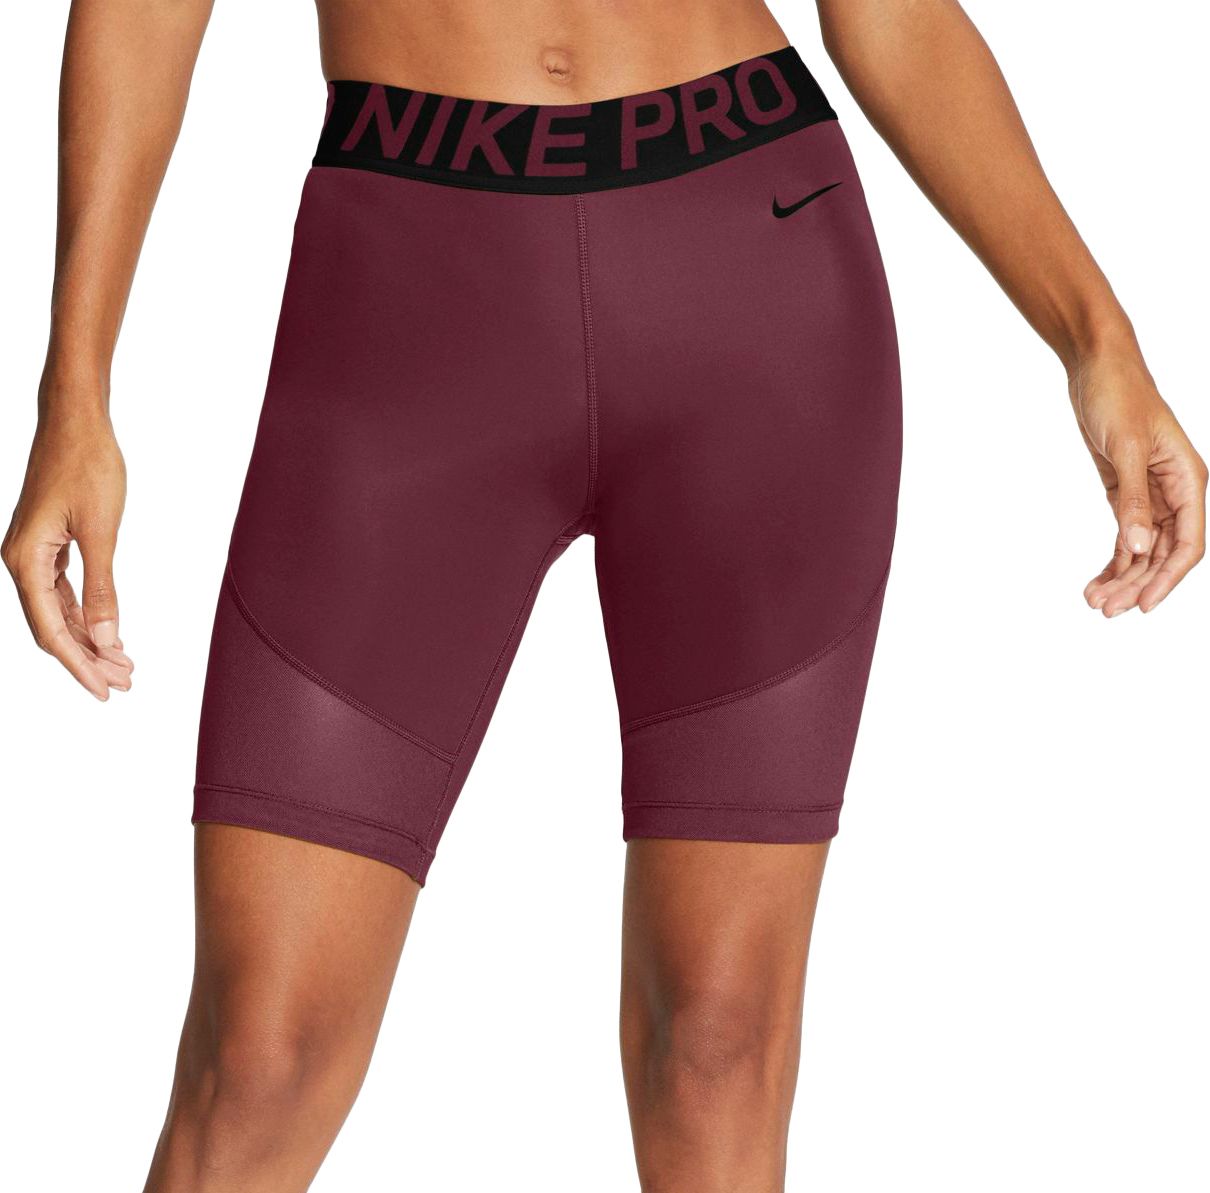 nike pro shorts size 8